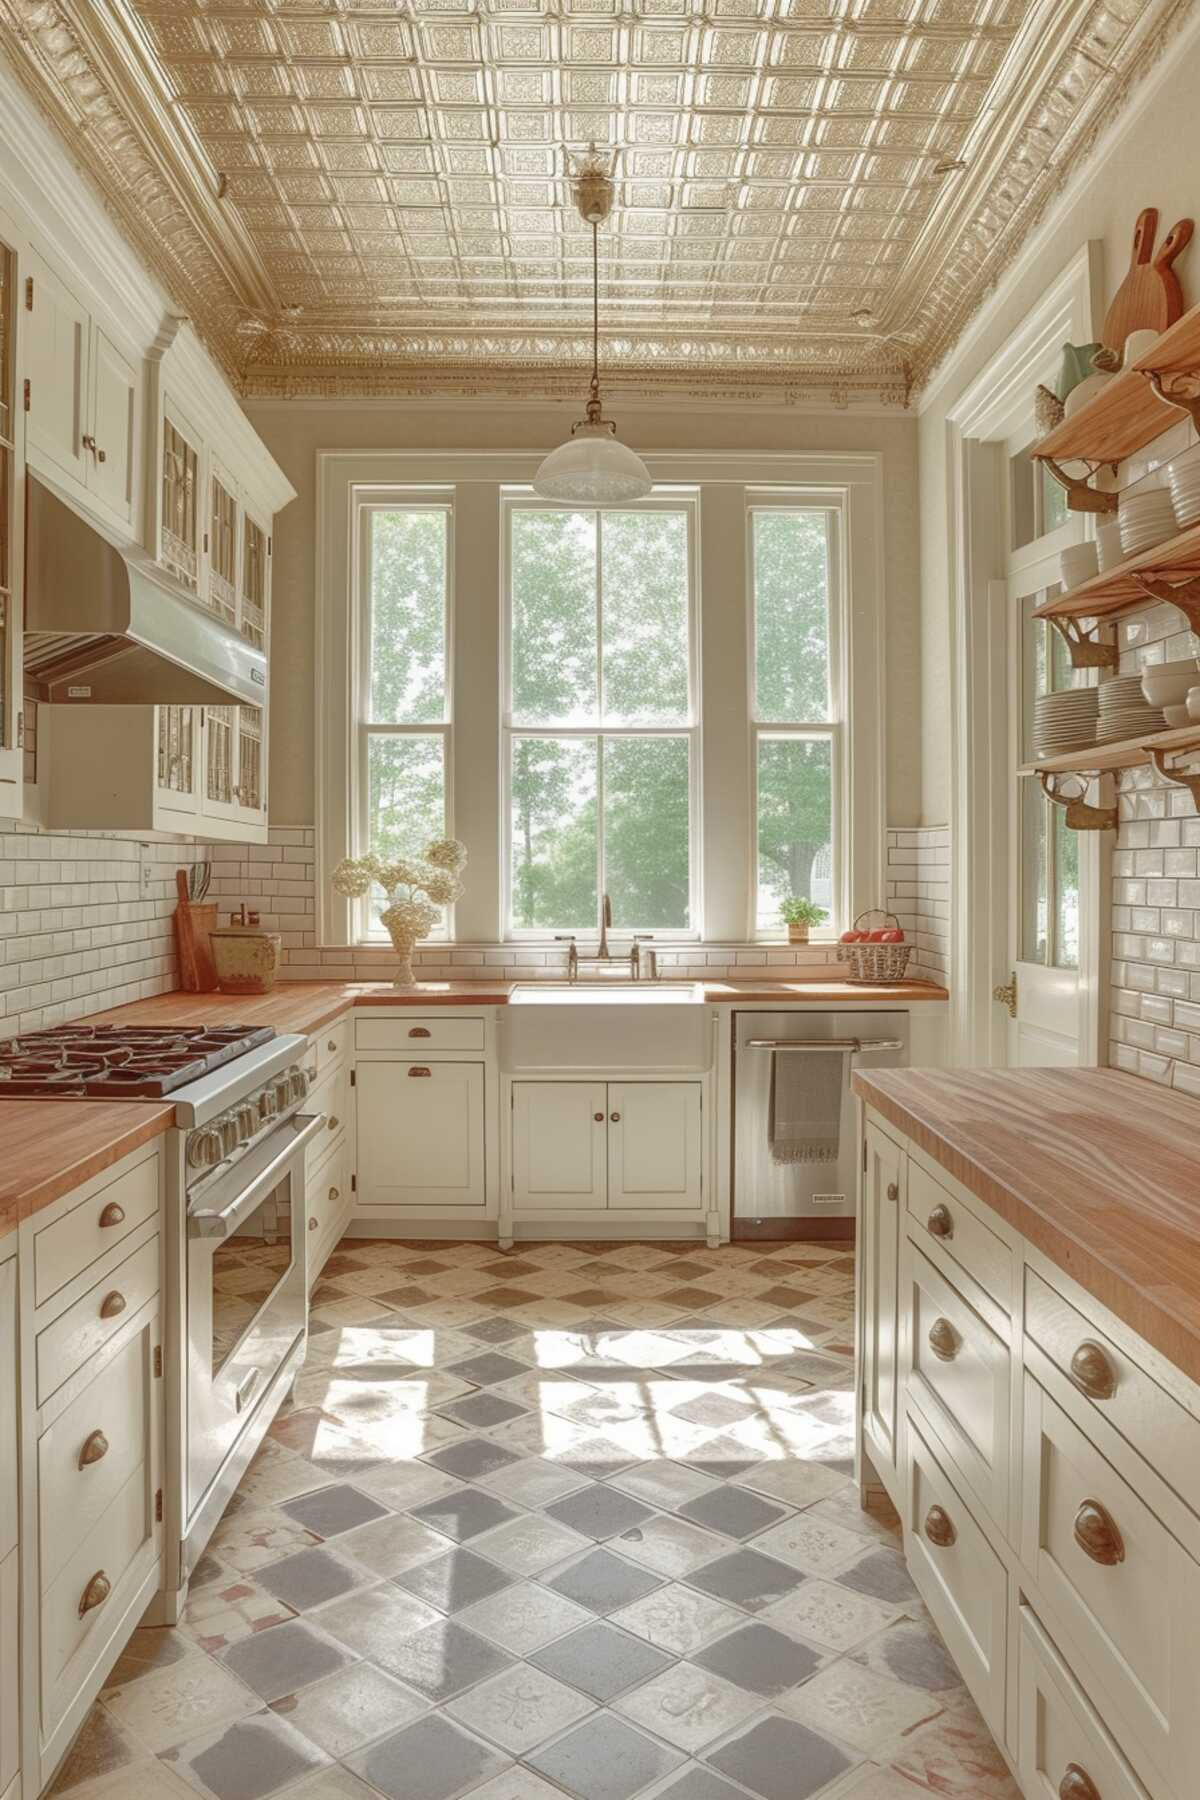 Farmhouse Kitchen Design : Charming Farmhouse Kitchen Design Ideas to Upgrade Your Home Decor